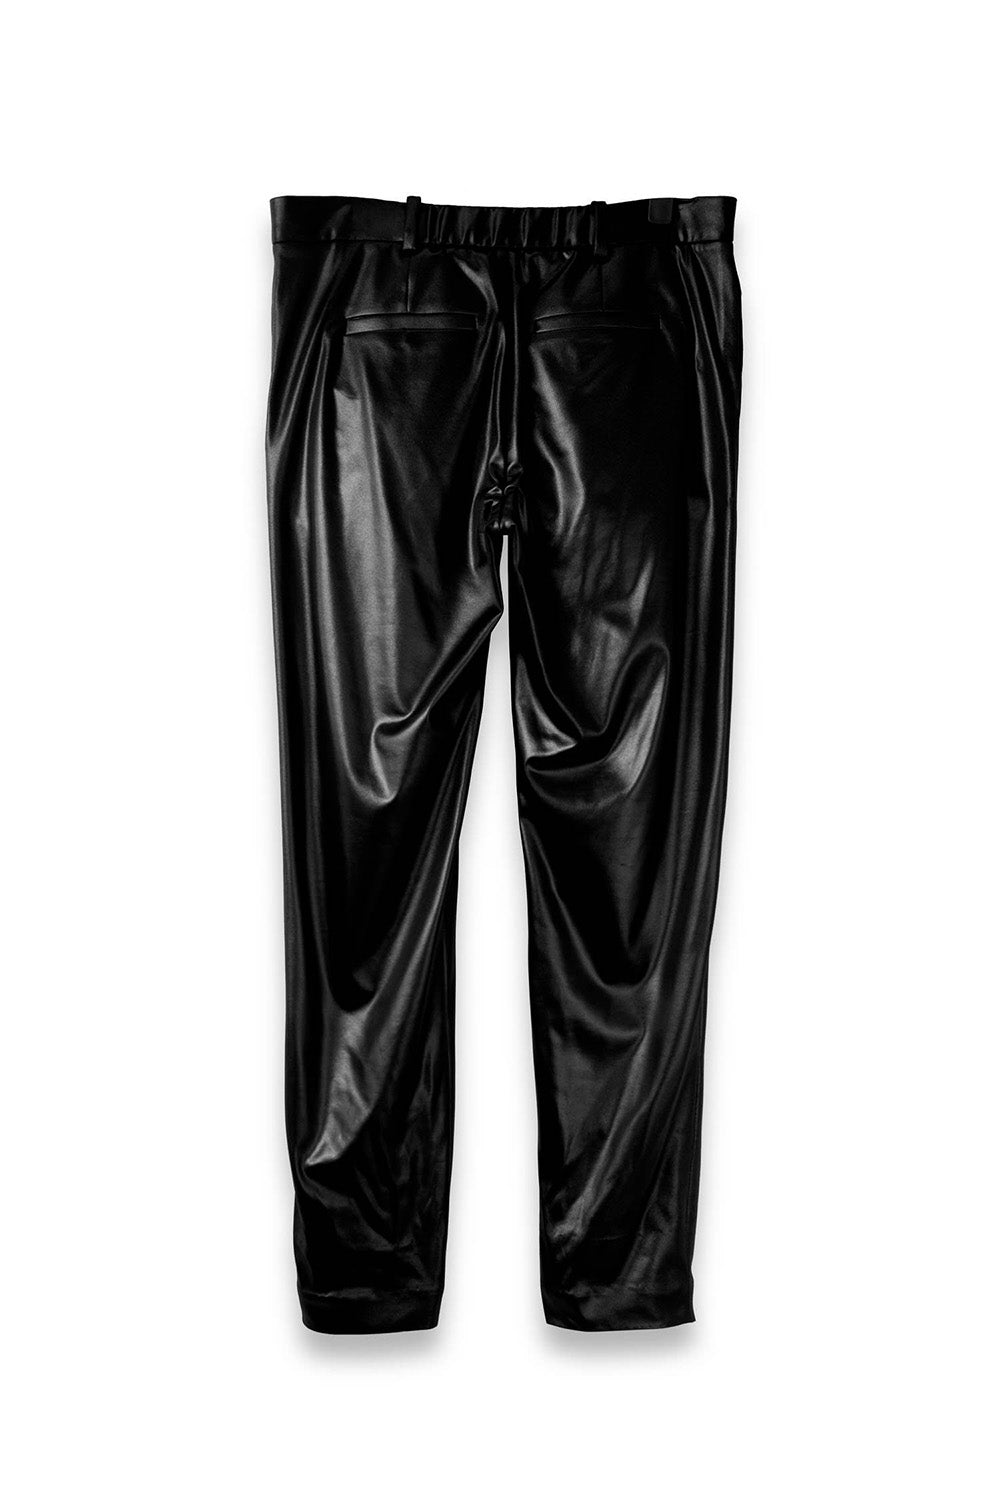 SEANNUNG - MEN- Casual Tailored Trousers in Dark Black 亮黑休閒西裝窄褲